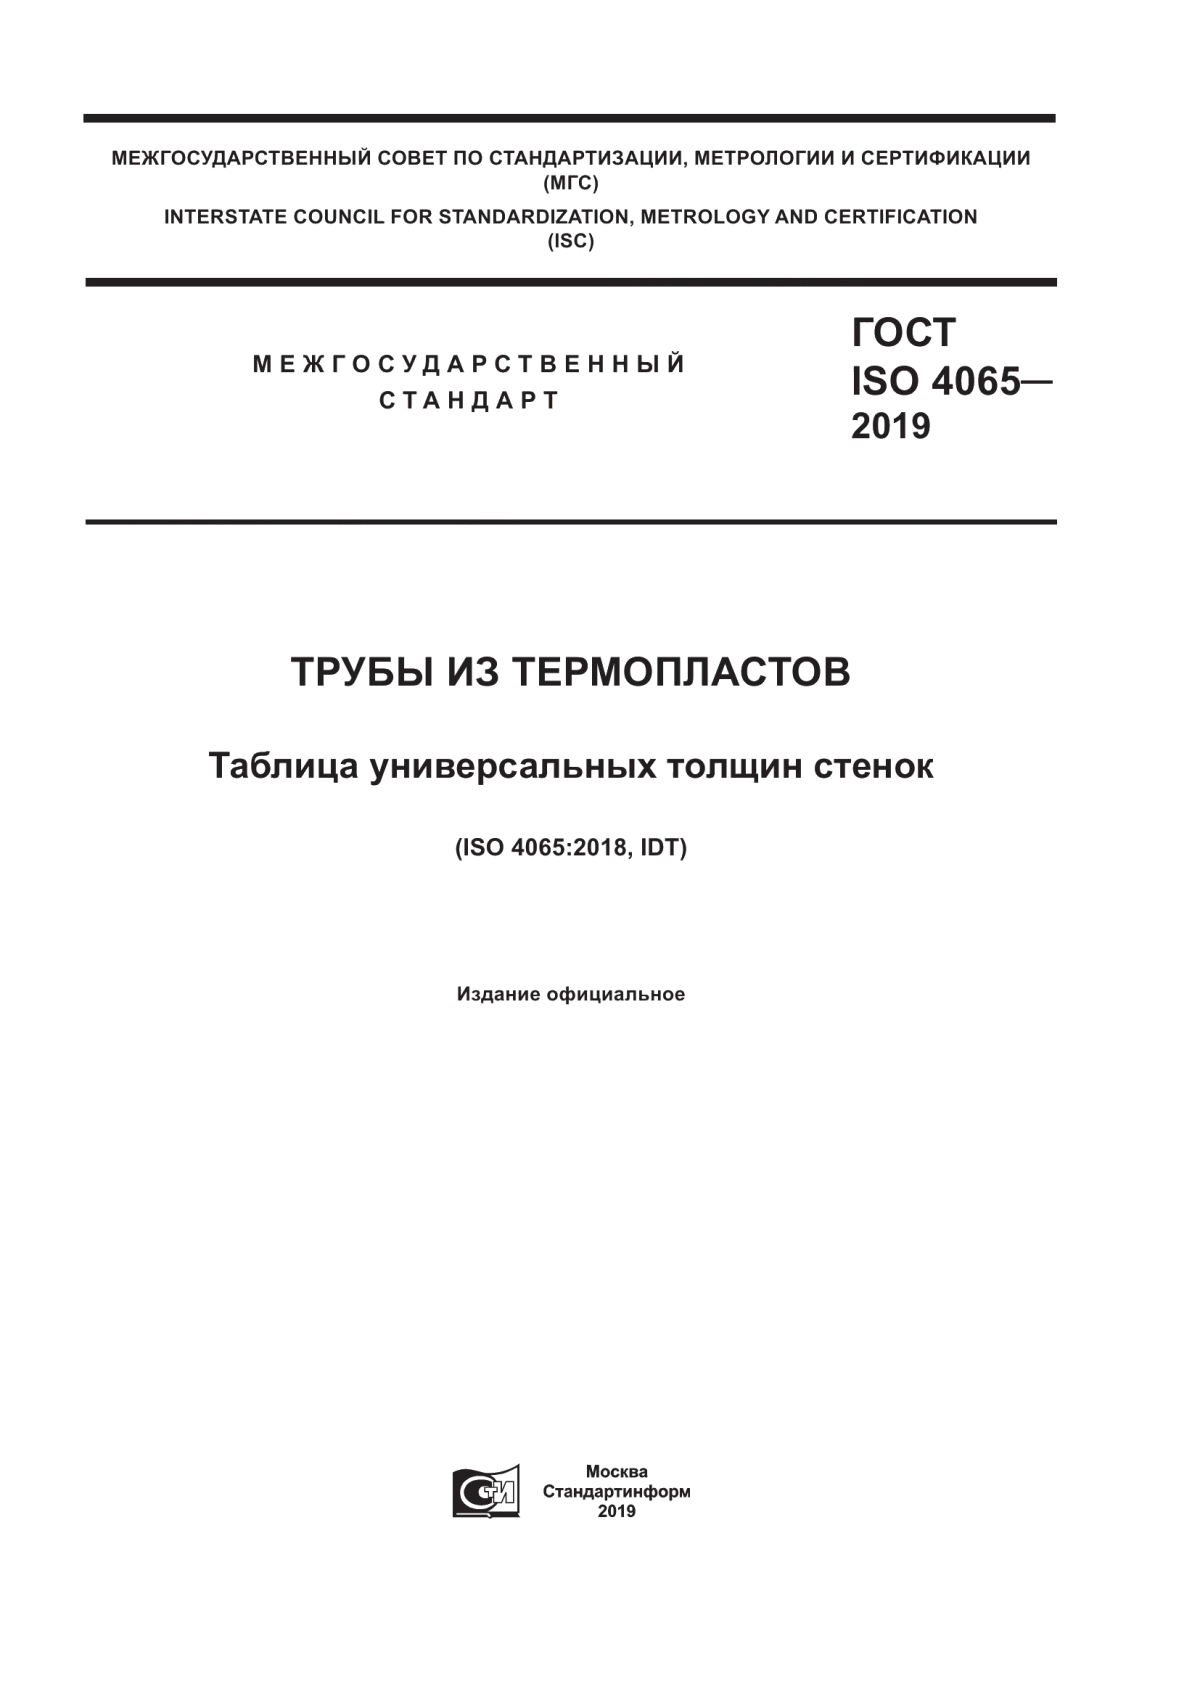 ГОСТ ISO 4065-2019 Трубы из термопластов. Таблица универсальных толщин стенок